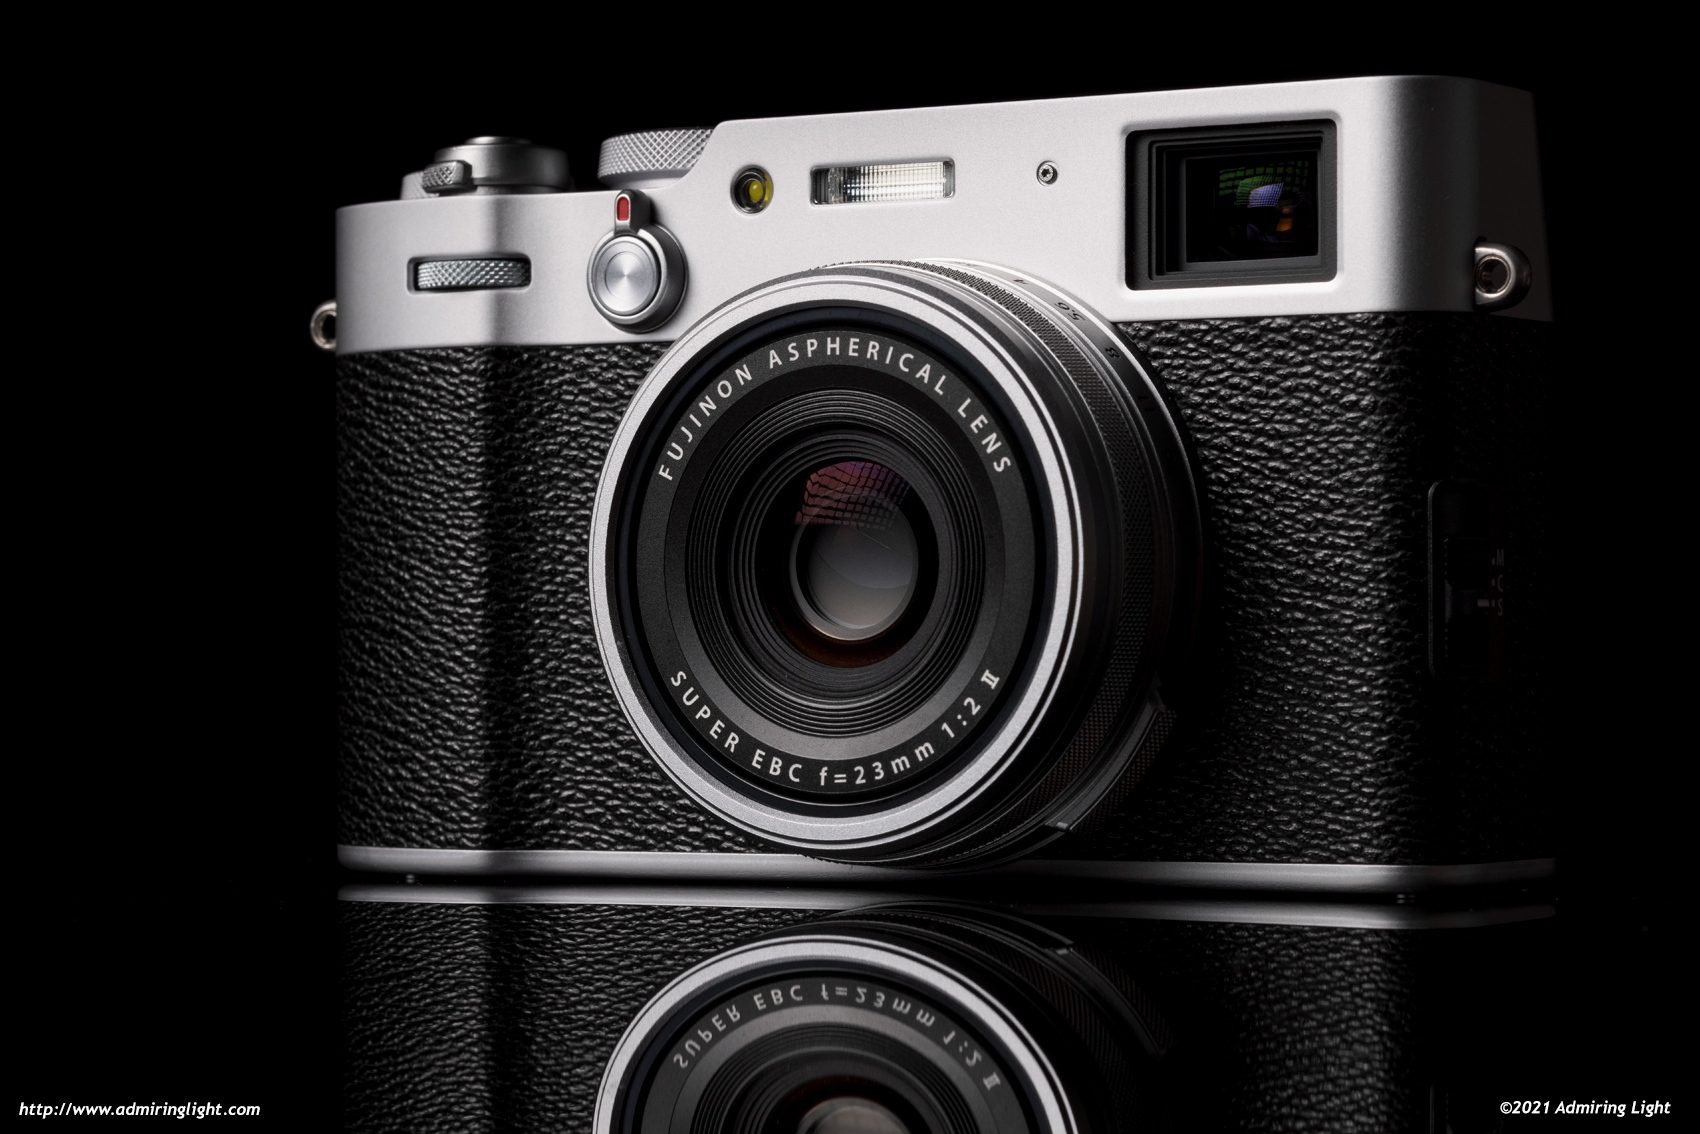 Camara Fujifilm X-100V Black